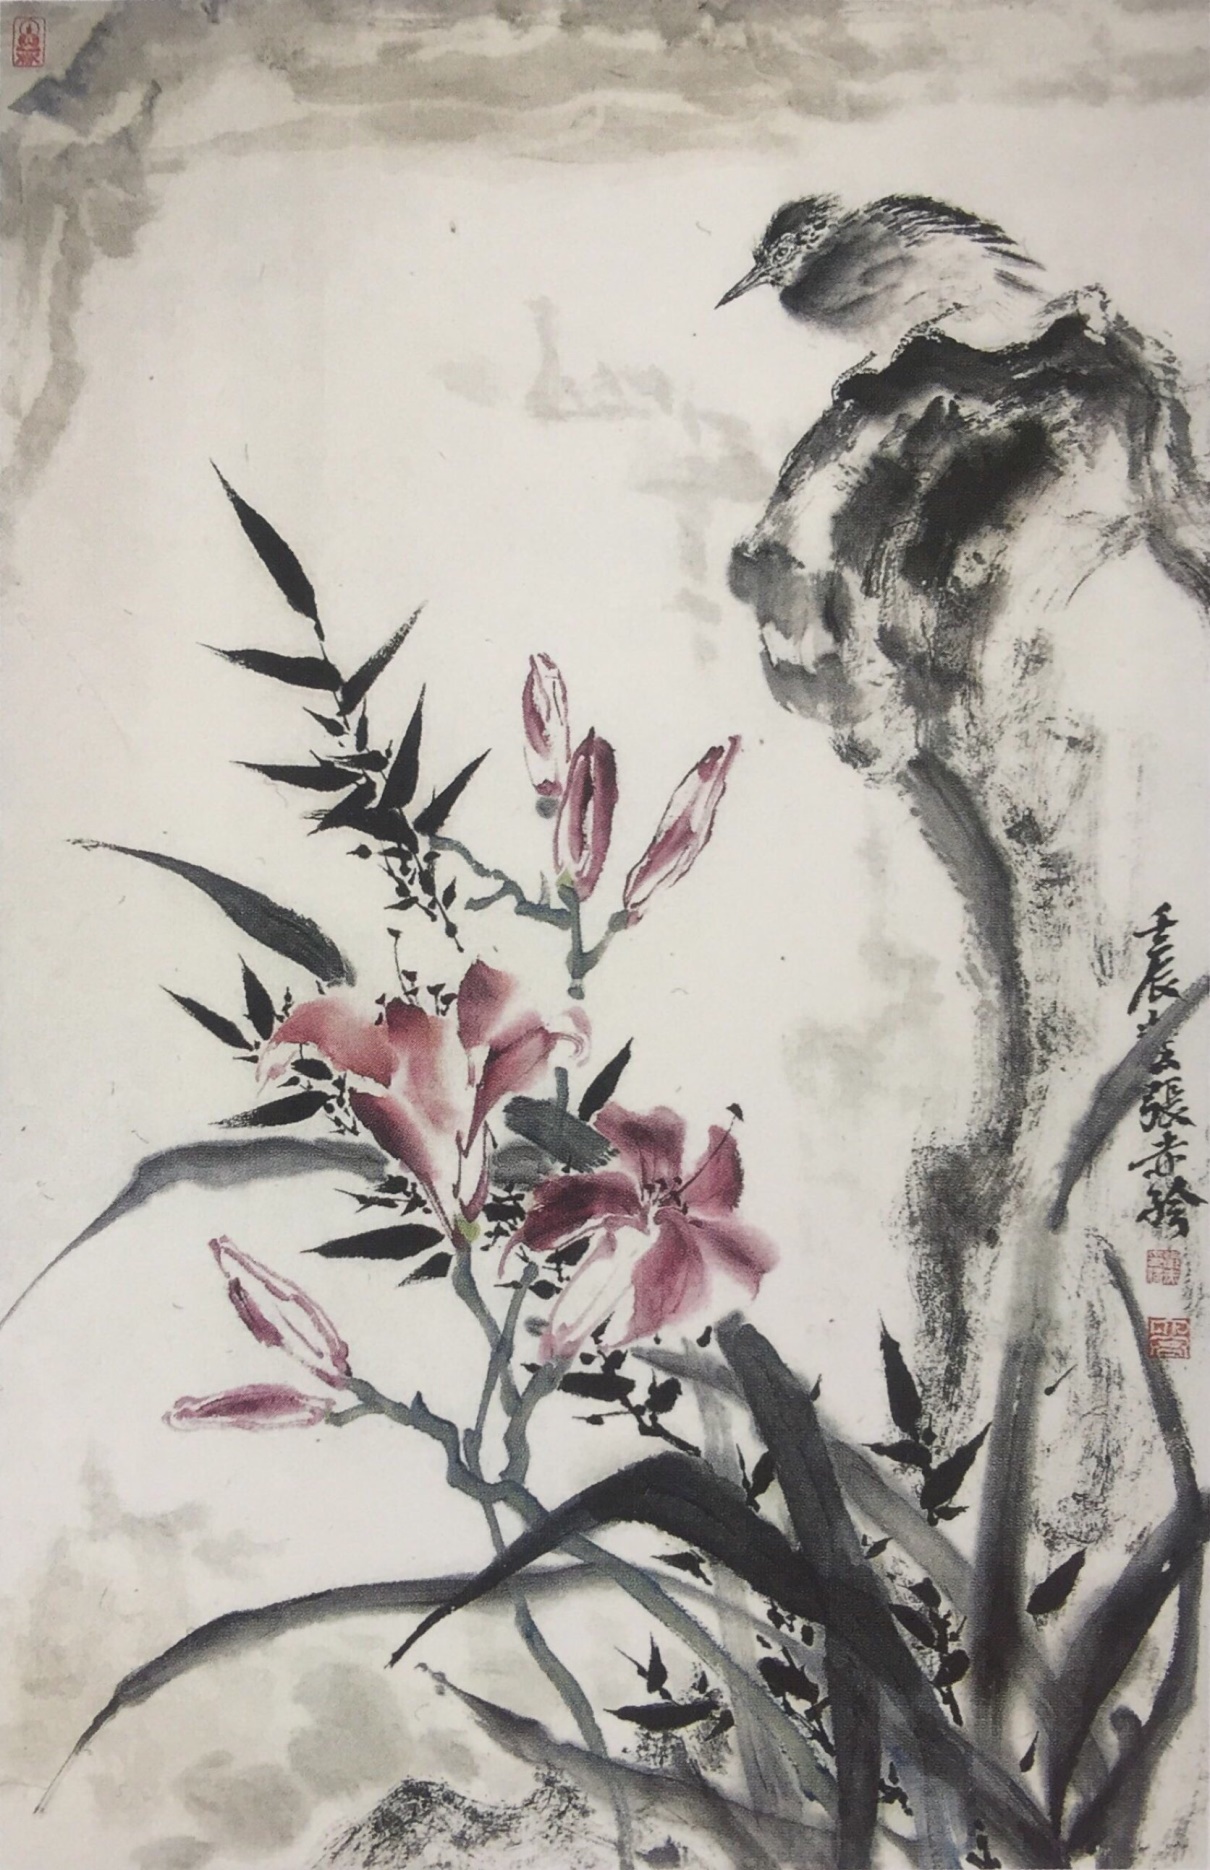 中国美术学院美术考级花鸟画考级七级(高级)示范图例。